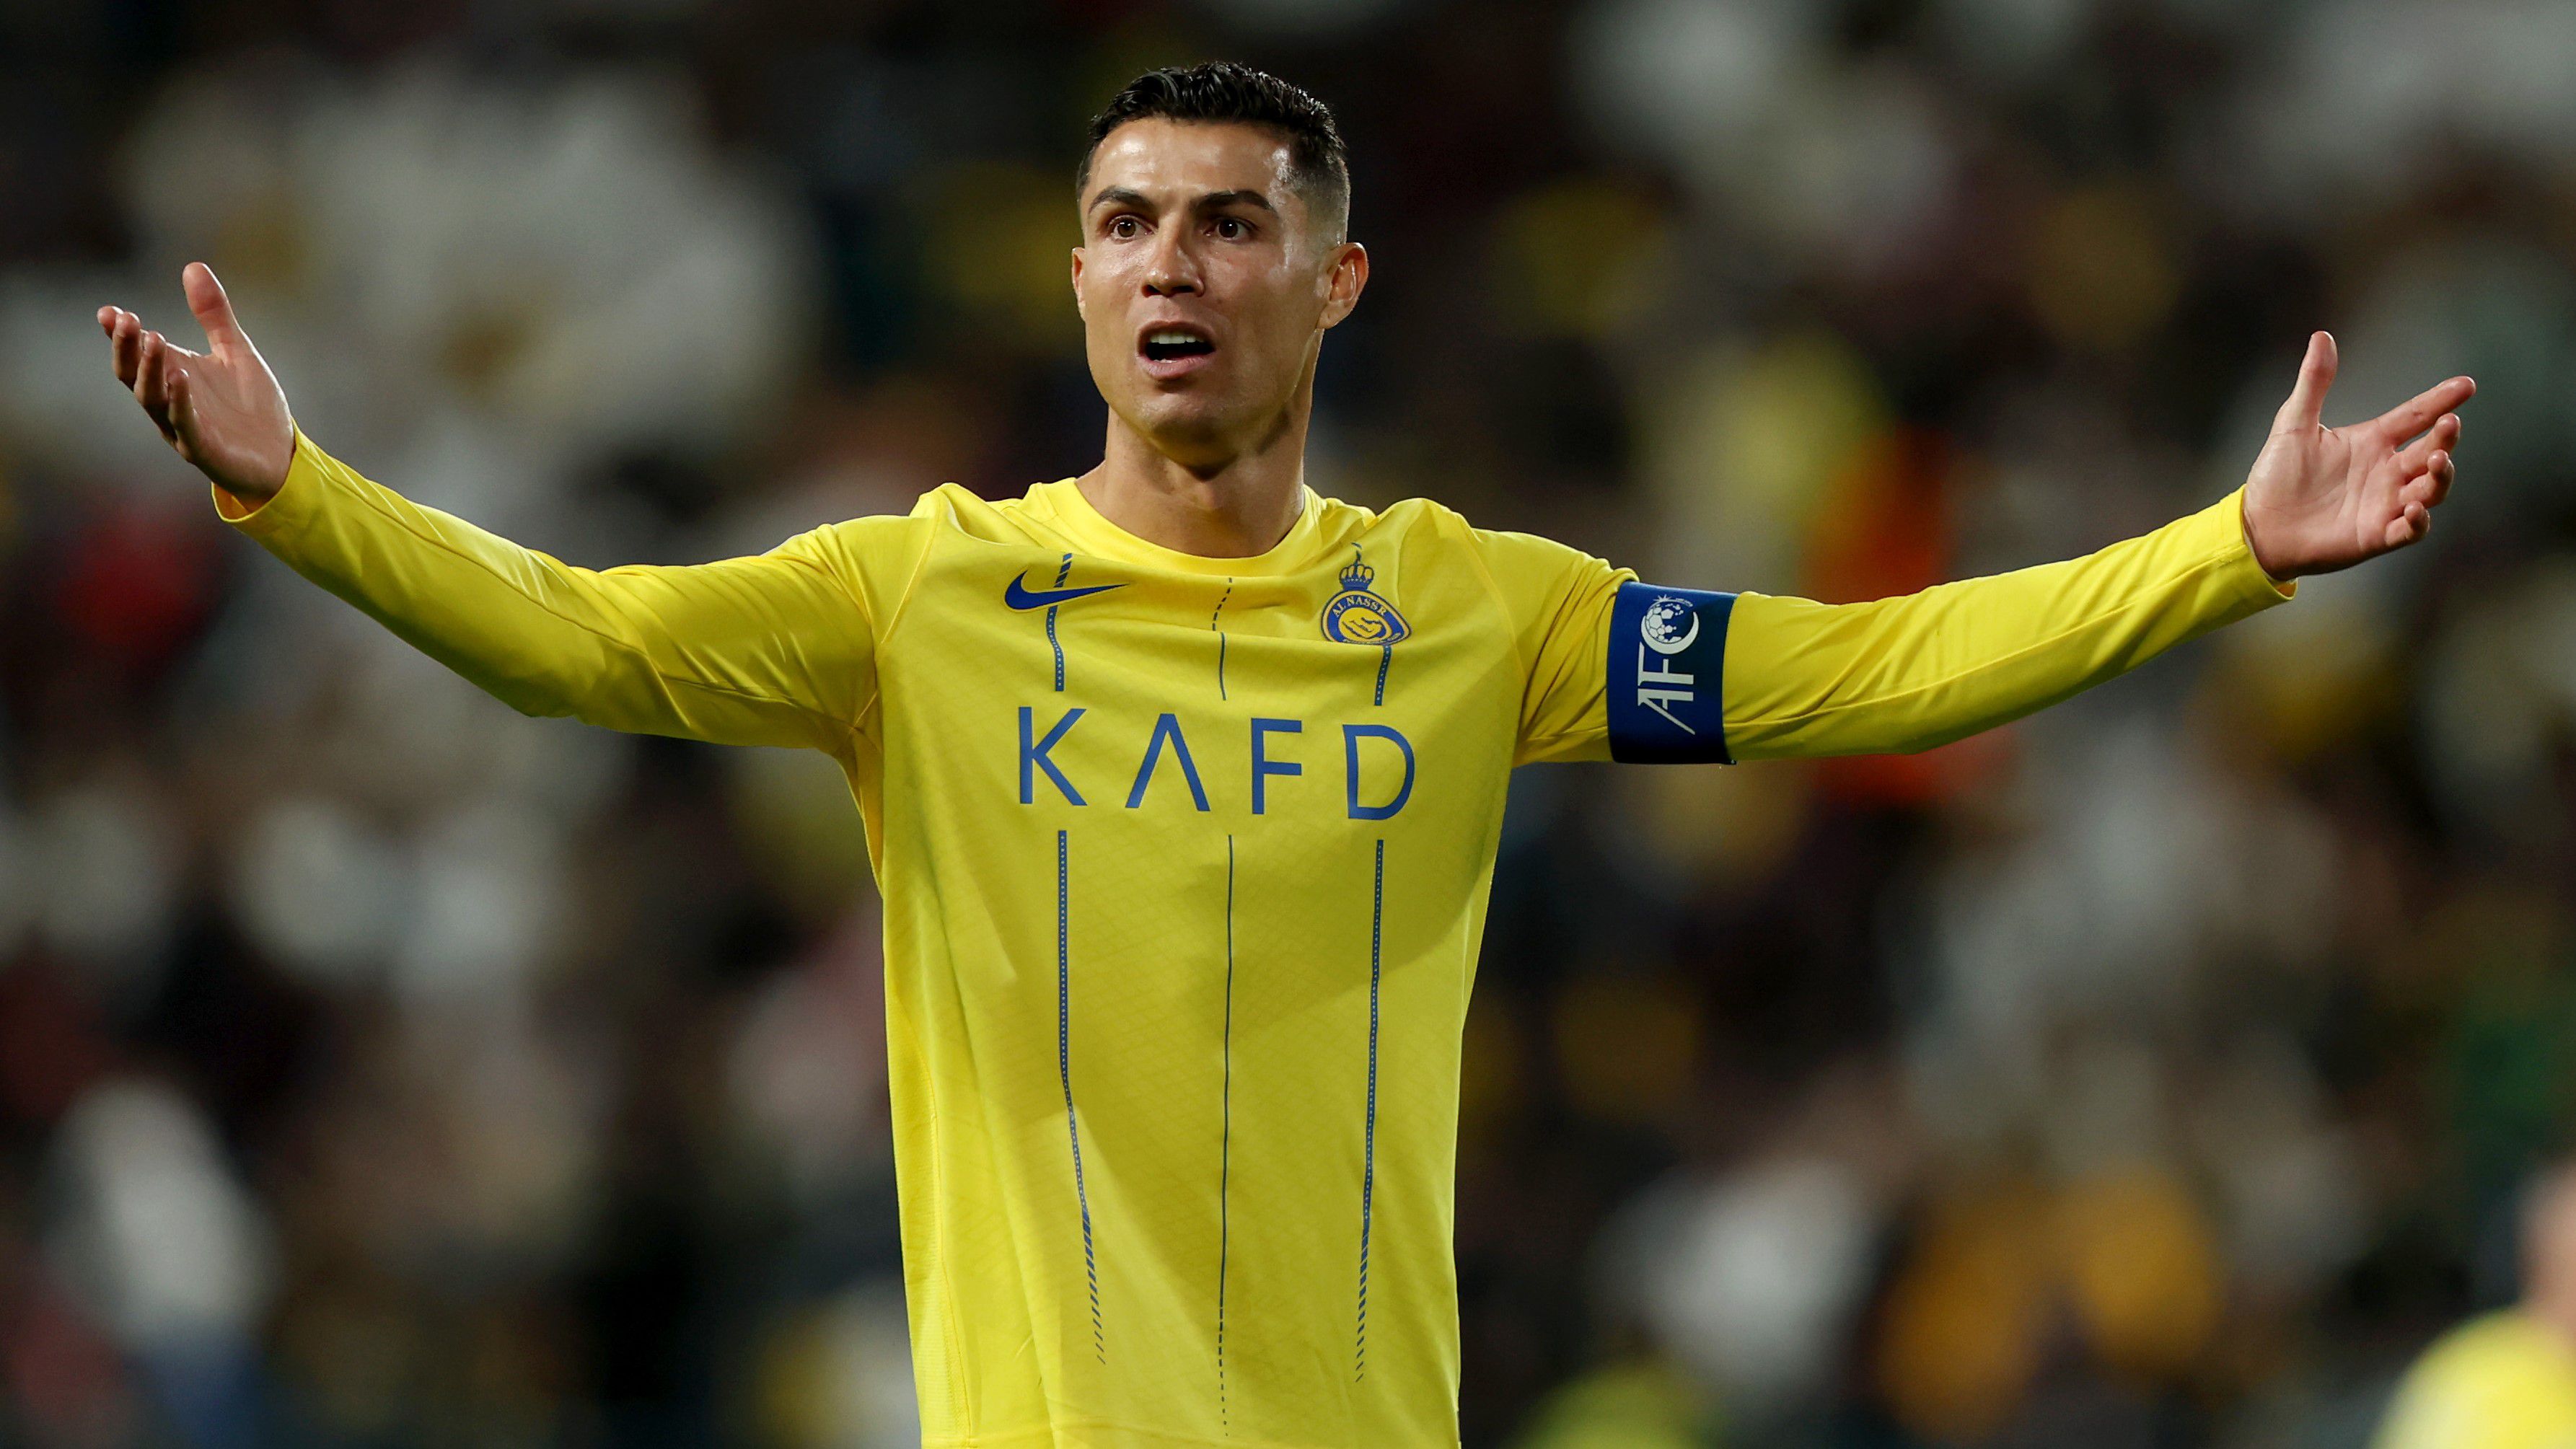 Cristiano Ronaldo vesztes meccsen van túl – de hátravan még a párharc visszavágója